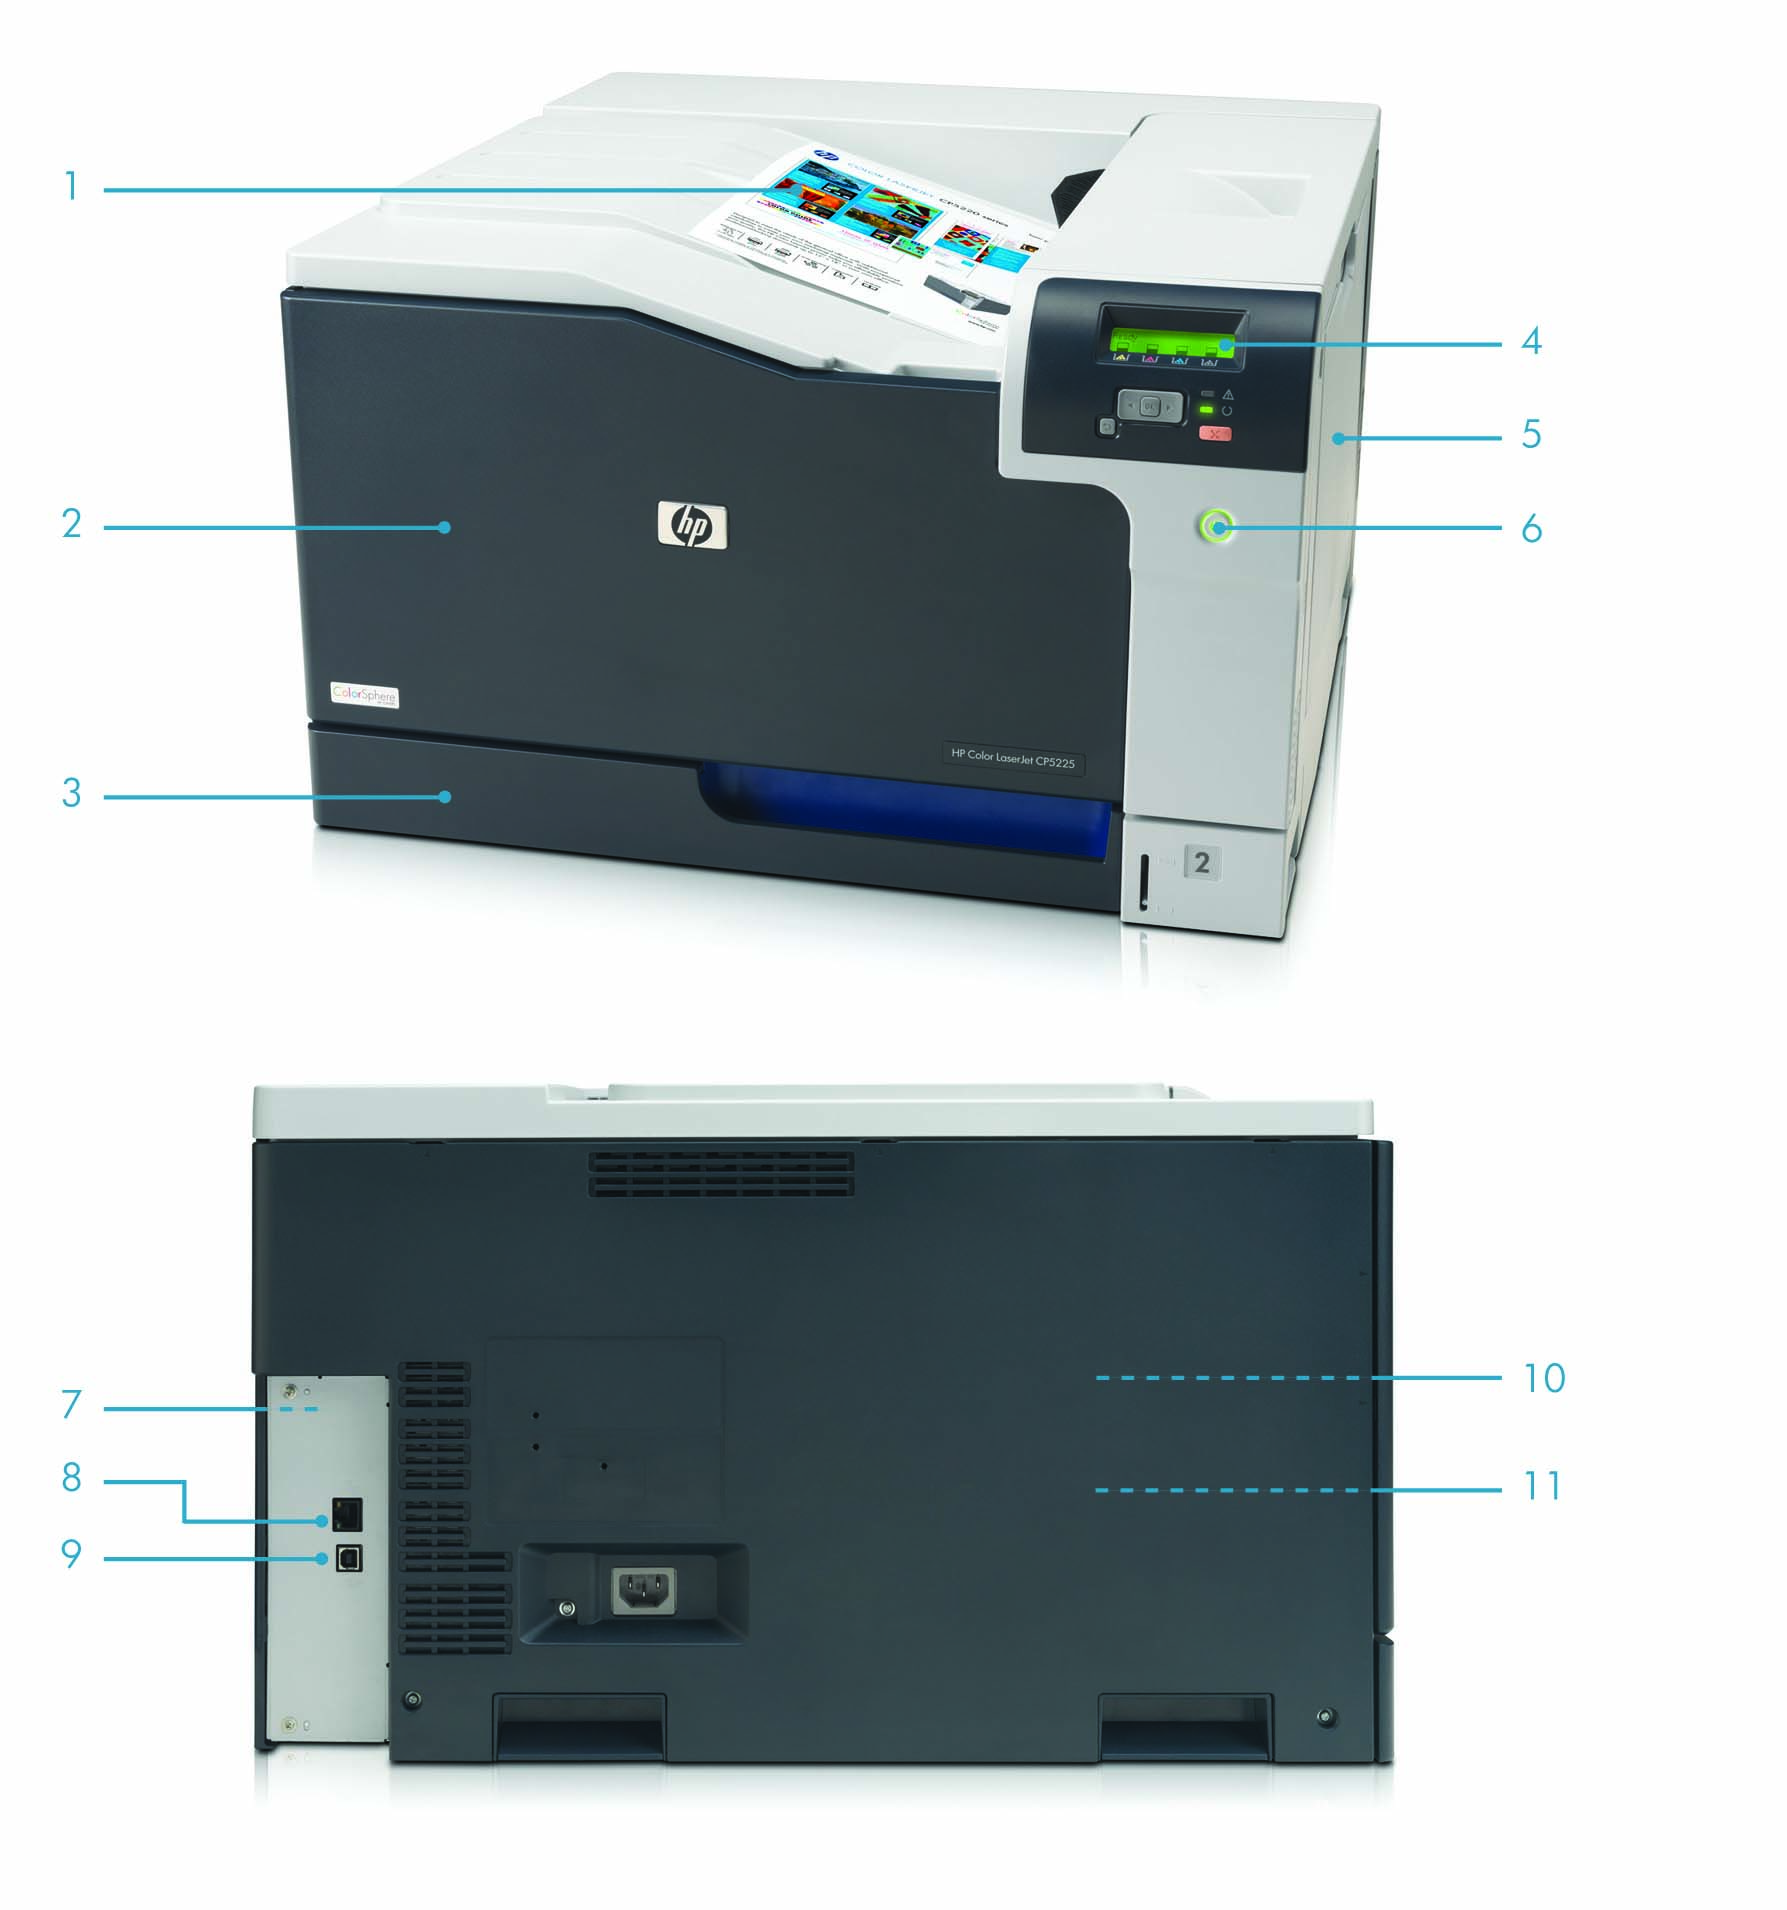 Περιήγηση στο προϊόν Εμφανίζεται ο έγχρωμος εκτυπωτής HP Color LaserJet Professional CP5225dn: 1. Πάνω δίσκος συλλογής 250 2. Πρόσβαση από μία θύρα στα δοχεία γραφίτη εύκολης εγκατάστασης 3.